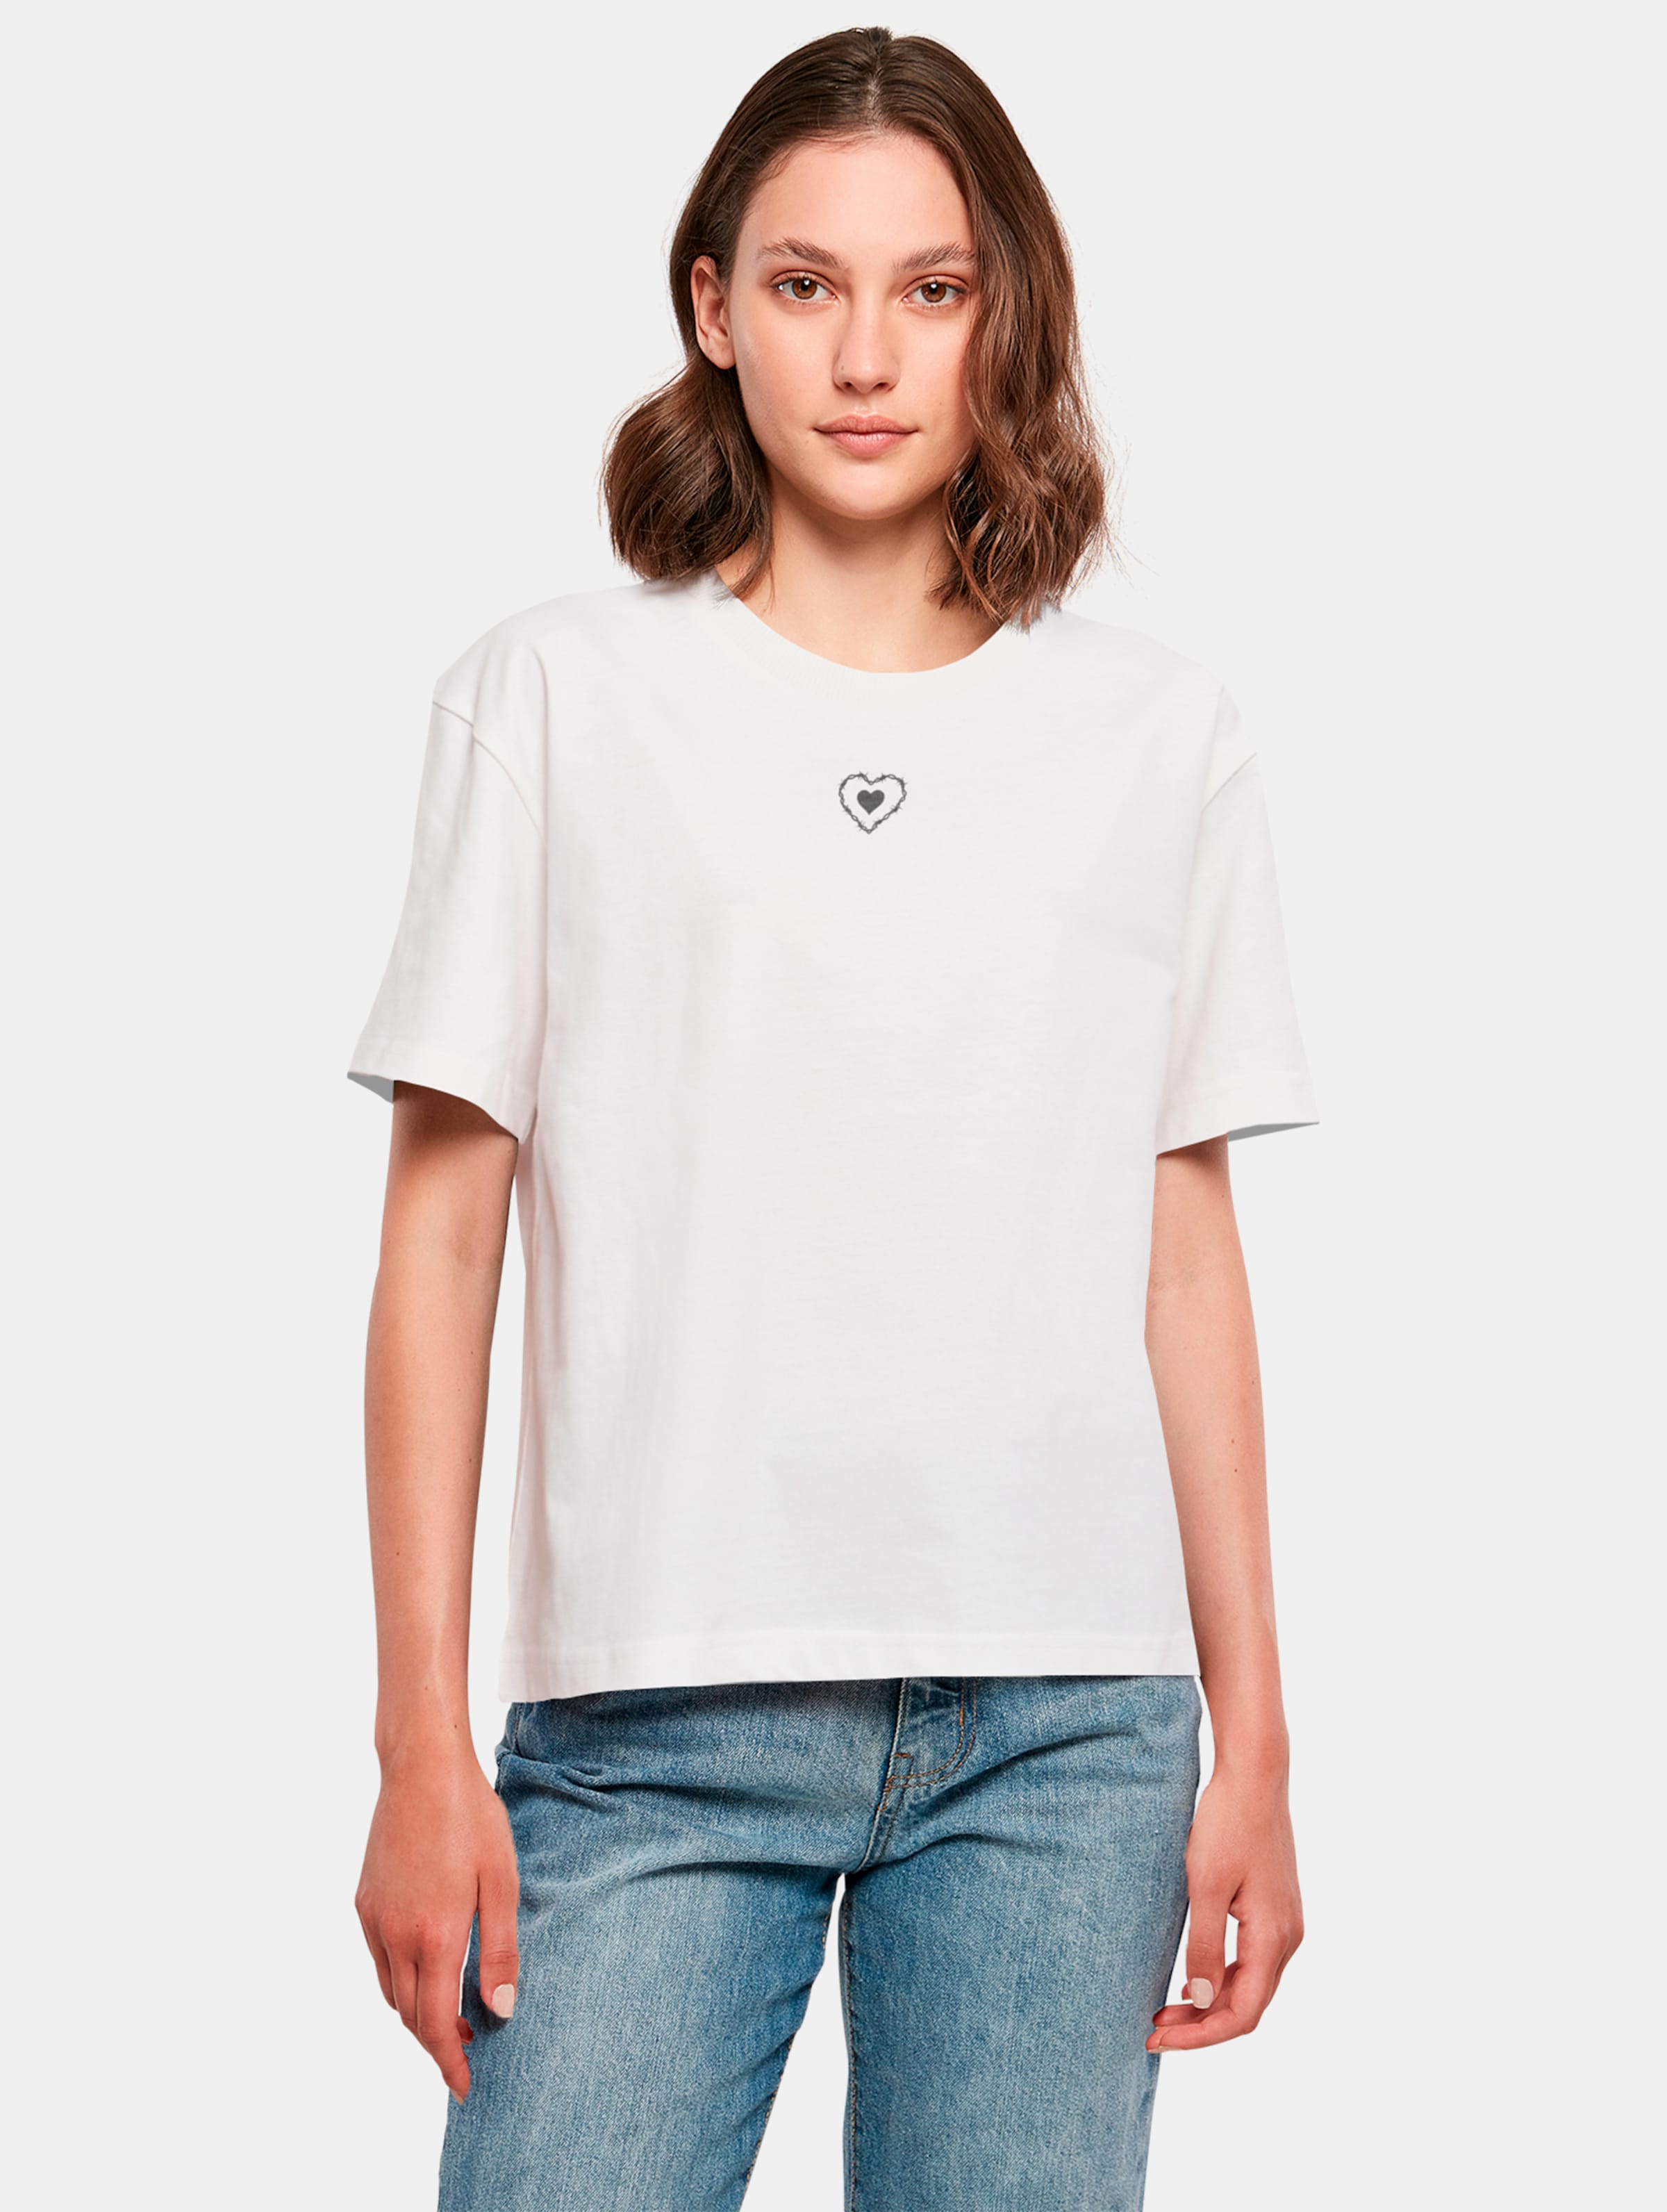 Miss Tee Good Vibes Only Heart T-Shirts Frauen,Unisex op kleur wit, Maat XS